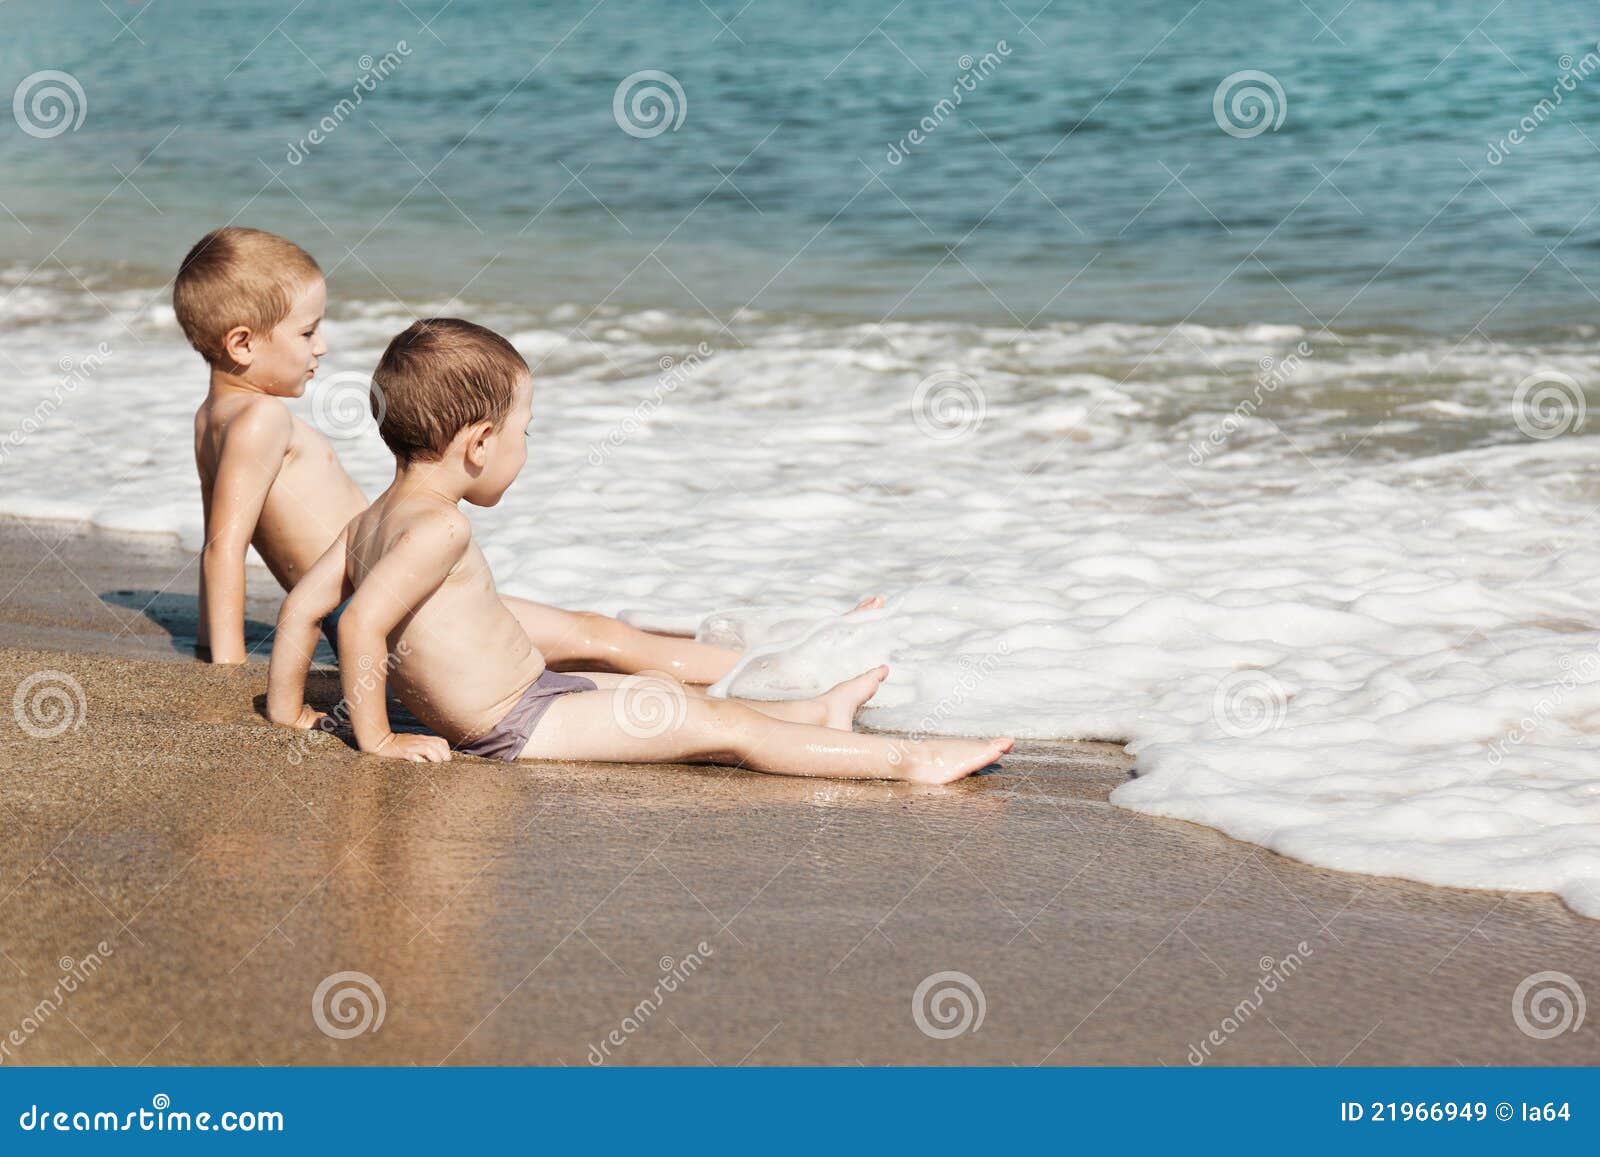 с детьми голым на пляж фото 26